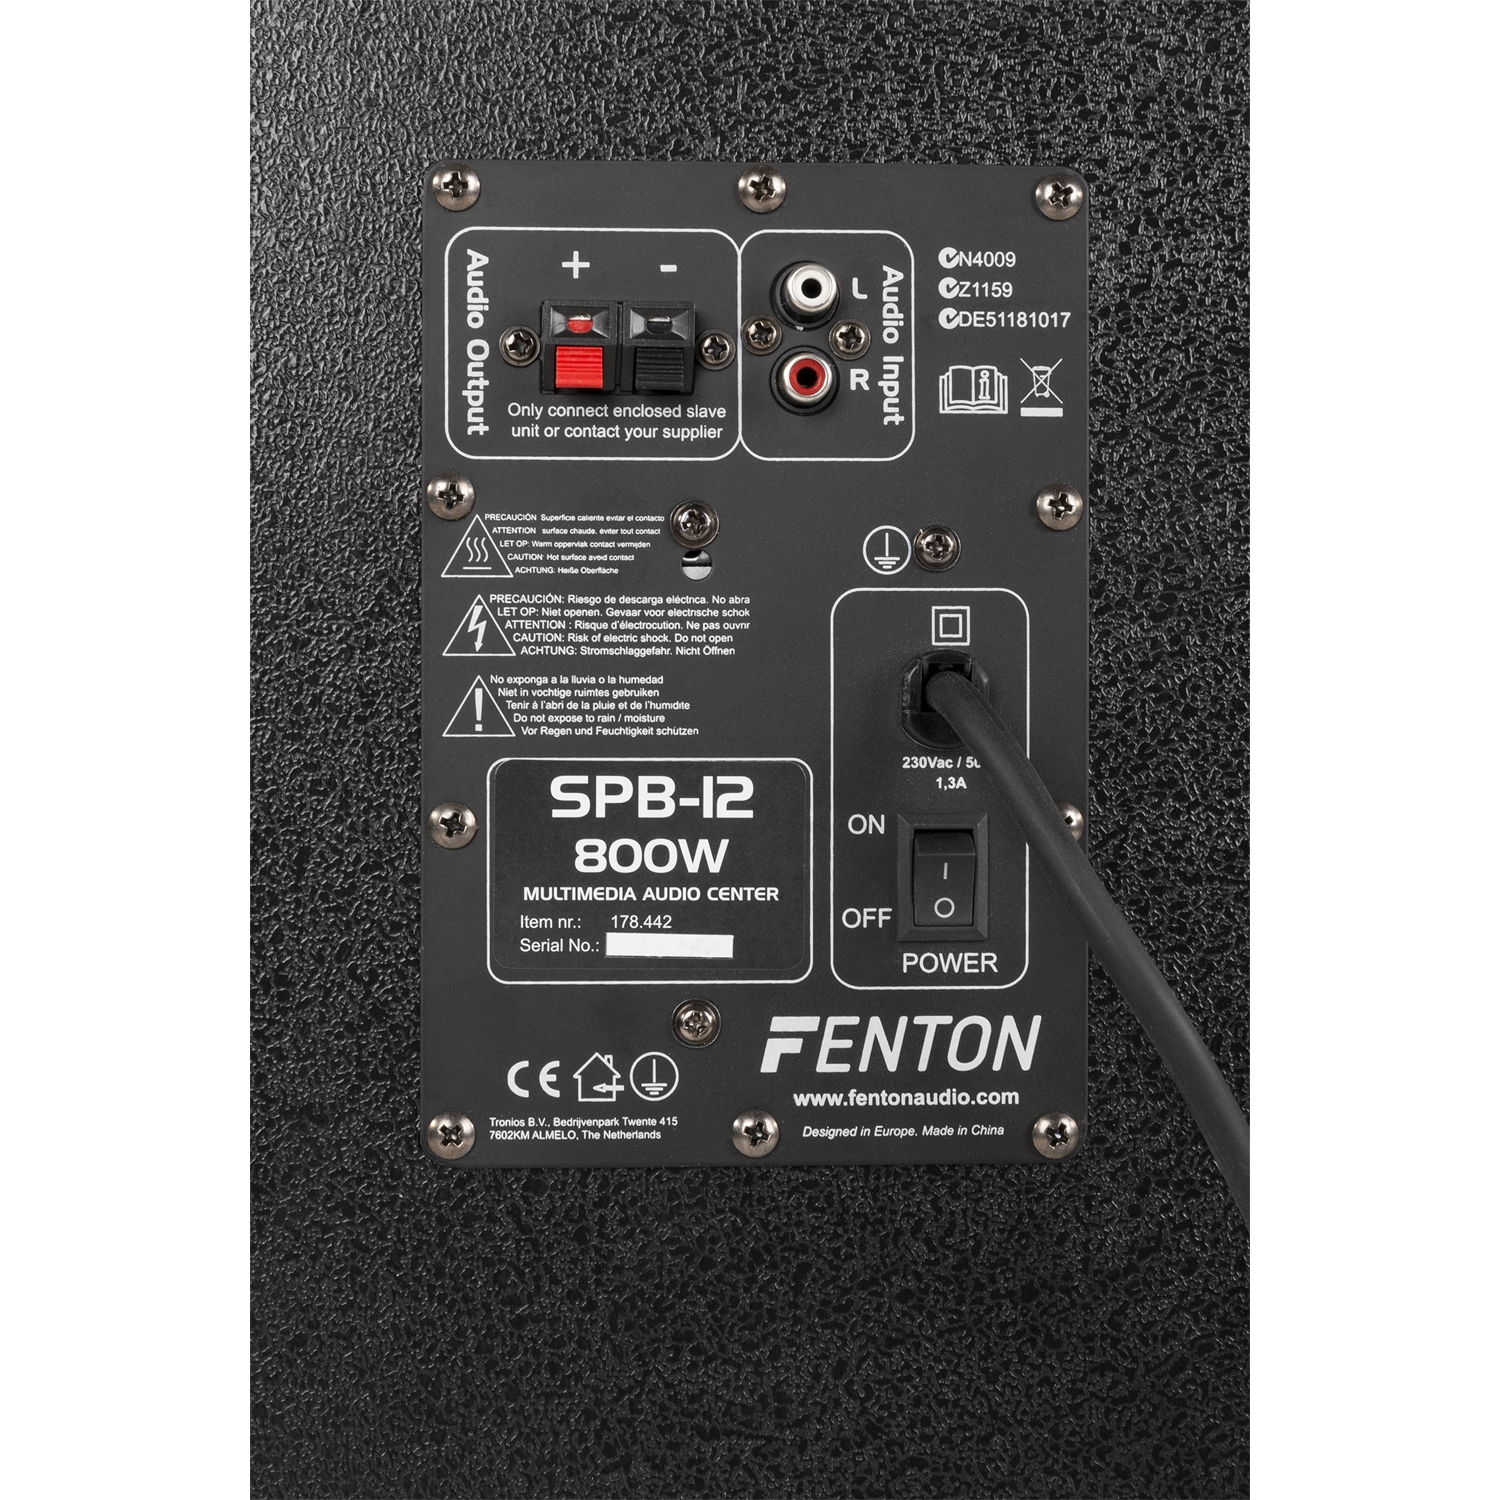 FENTON SPB-12 PA Σετ ημιεπαγγελ. ηχείων αυτοενισχυόμενο+παθητικό 12" 2 x 200 Watt MAX (ζεύγος) 178.442